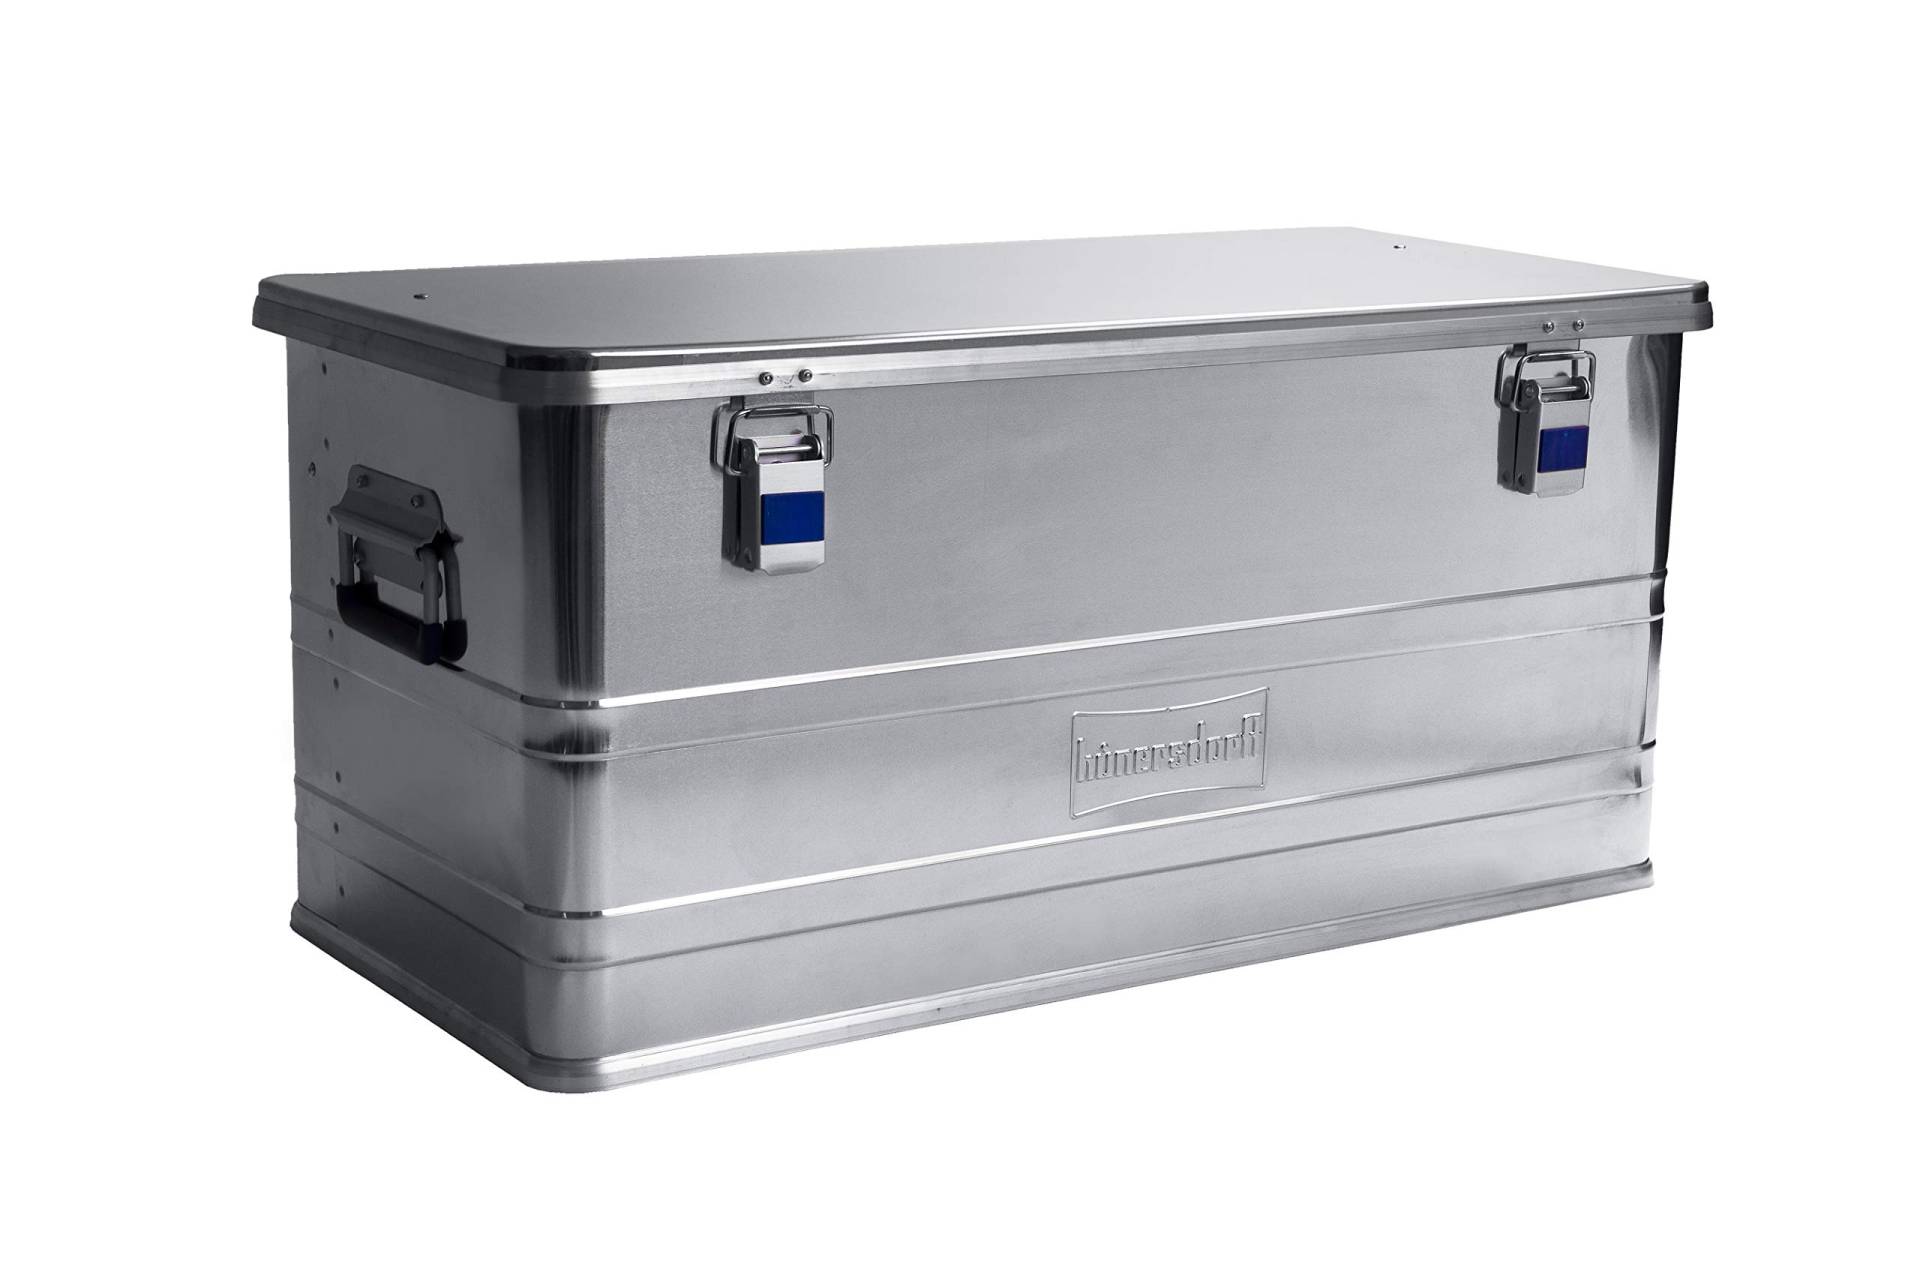 Hünersdorff Aluminium-Box Profi 92 Liter, wasserdicht mit Gummi-Dichtung, leicht, stabil, Klapphandgriffe, Vorbereitung für Schlösser, Farbe: silber von hünersdorff